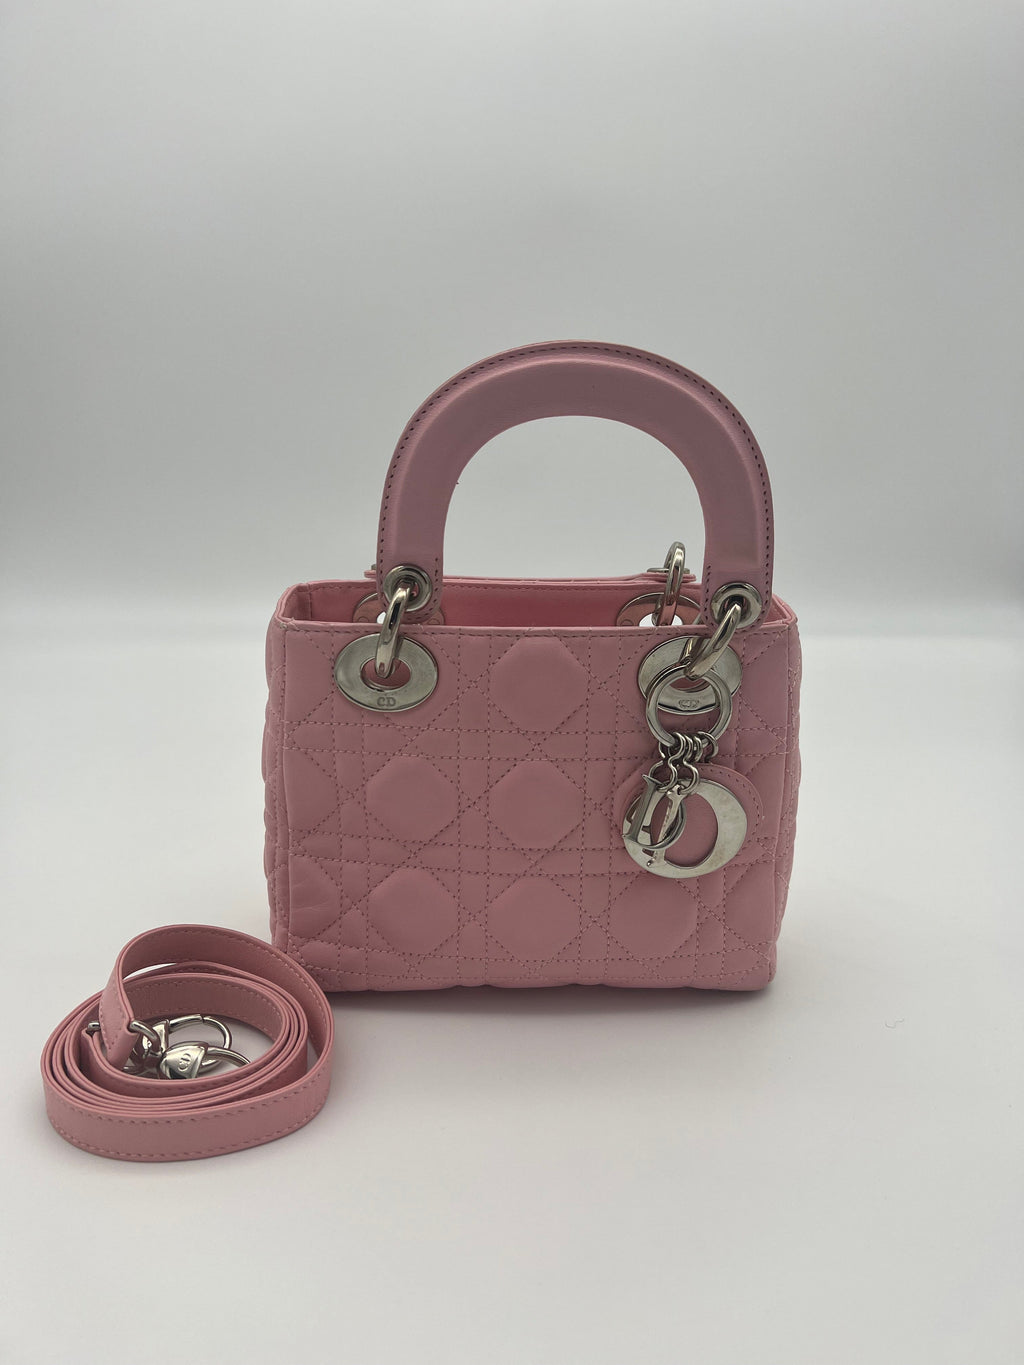 Auth Christian Dior Lady Dior Handbag Shoulder Bag Magenta Pink Leather  e52343a  eBay